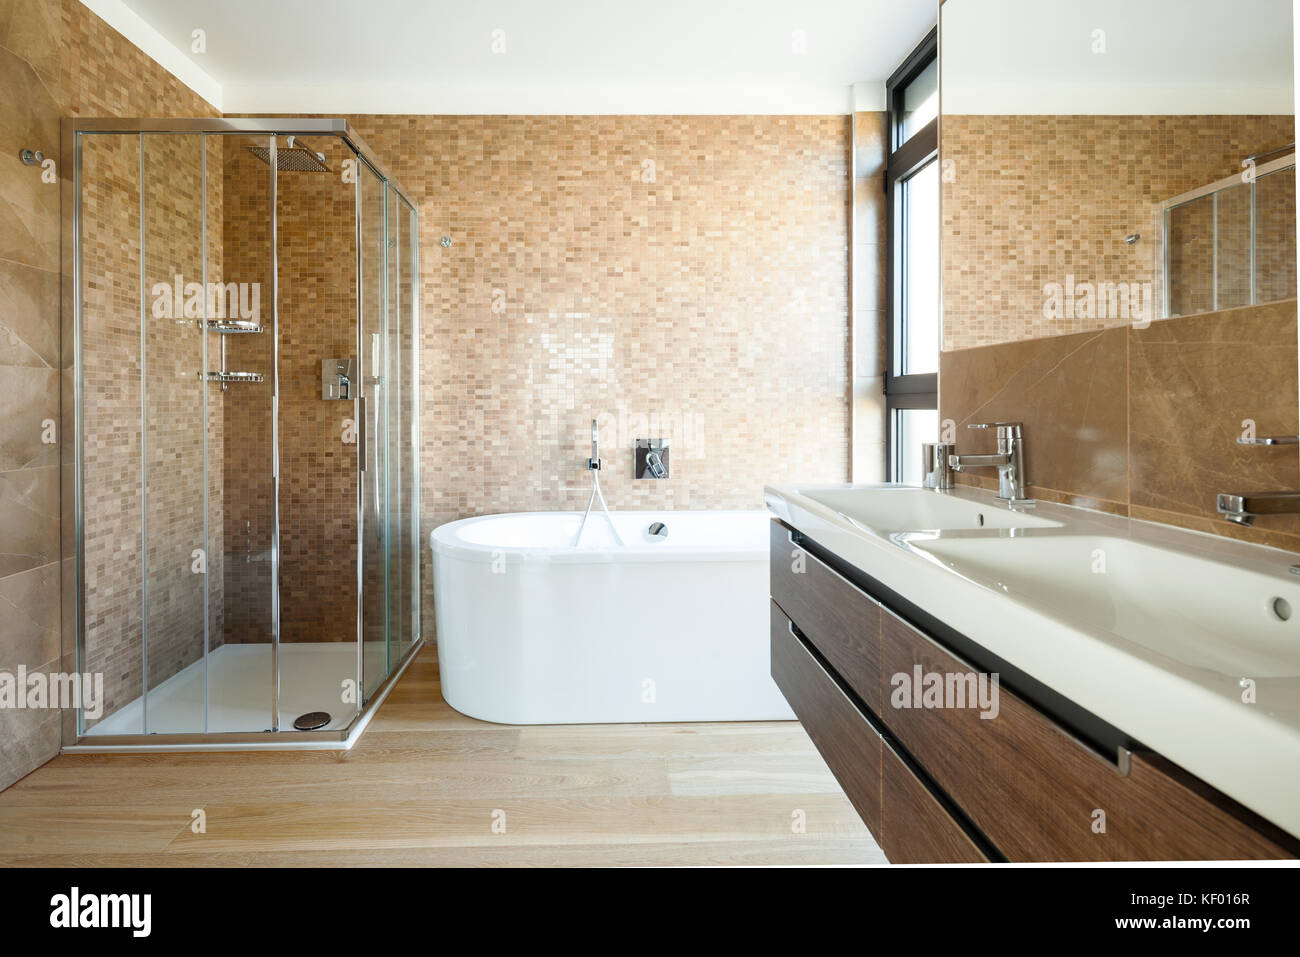 Salle de bains moderne avec une splendide marbre. Personne ne l'intérieur Banque D'Images